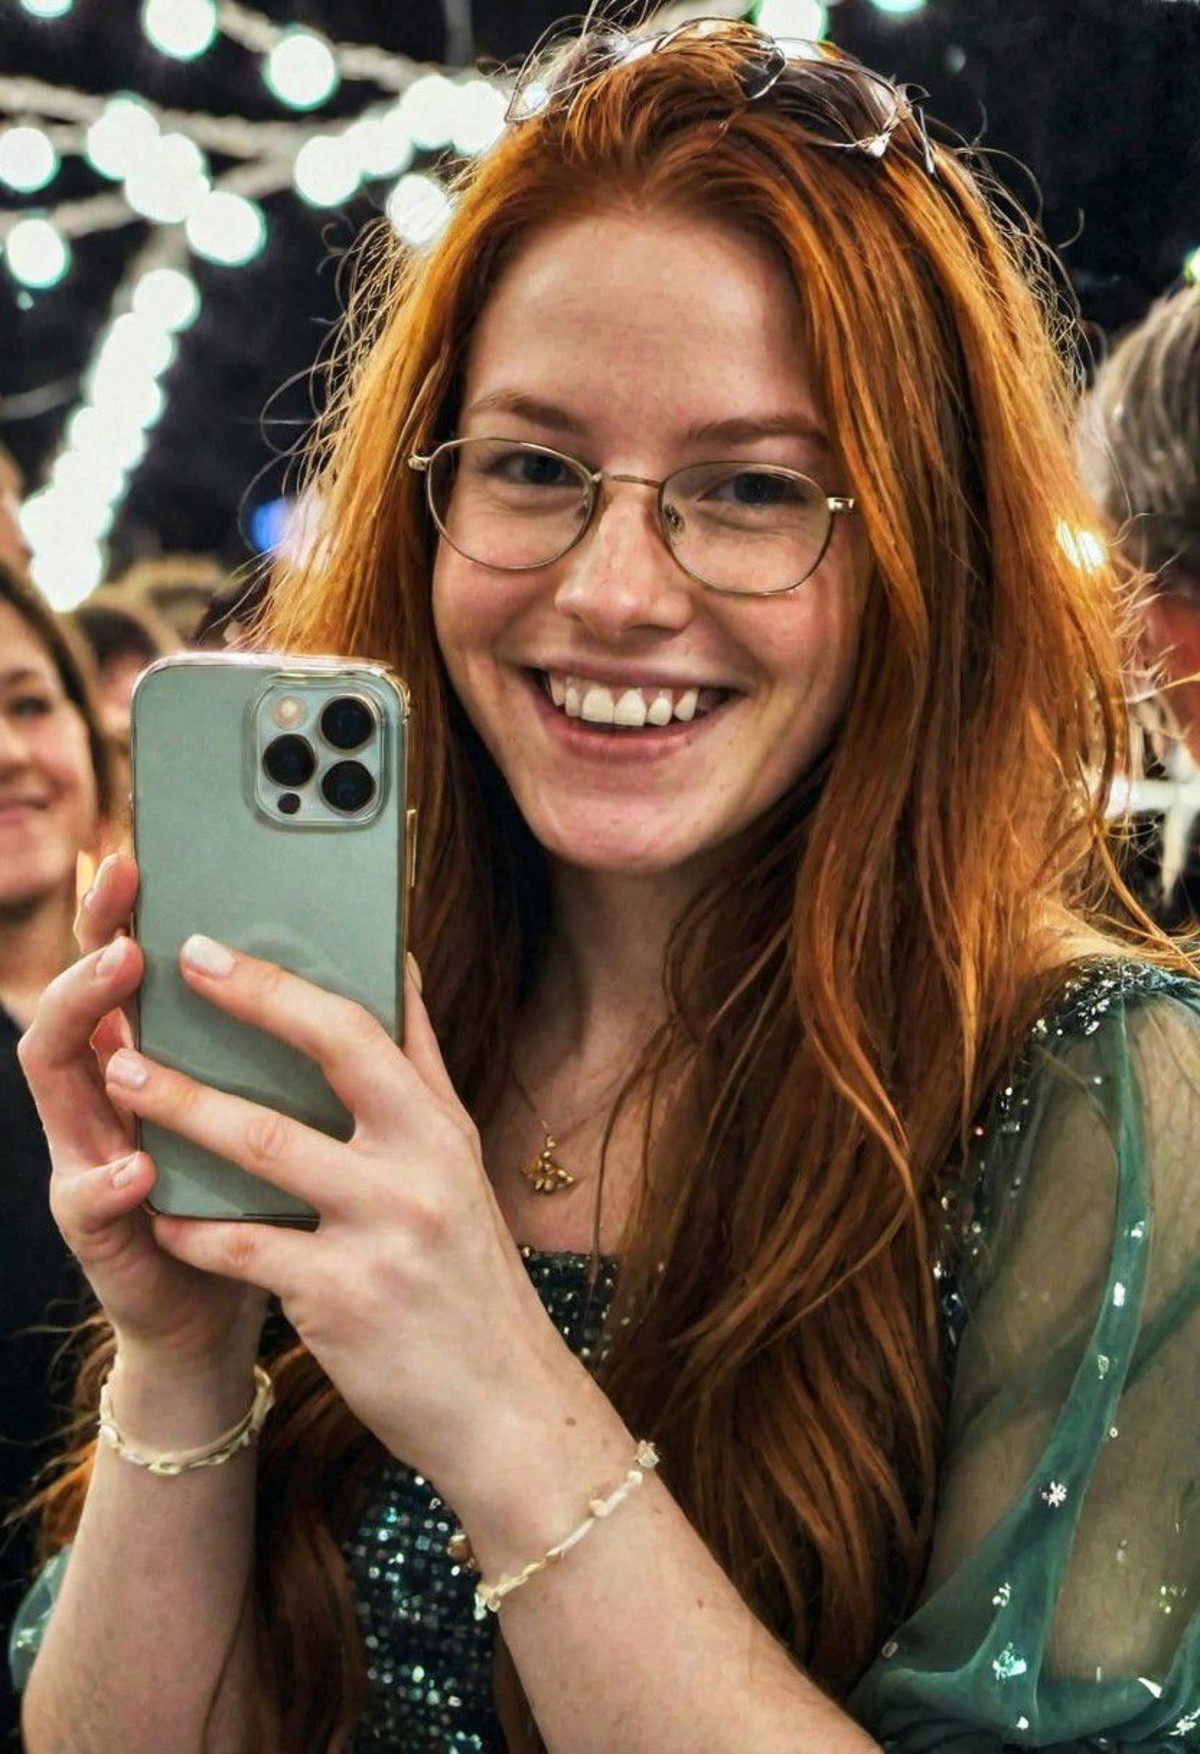 <lora:iphone_mirror_selfie_v01b:1>
((very grainy low resolution:1.2))
 iphone mirror selfie
redhead long flowing hair, 28y...